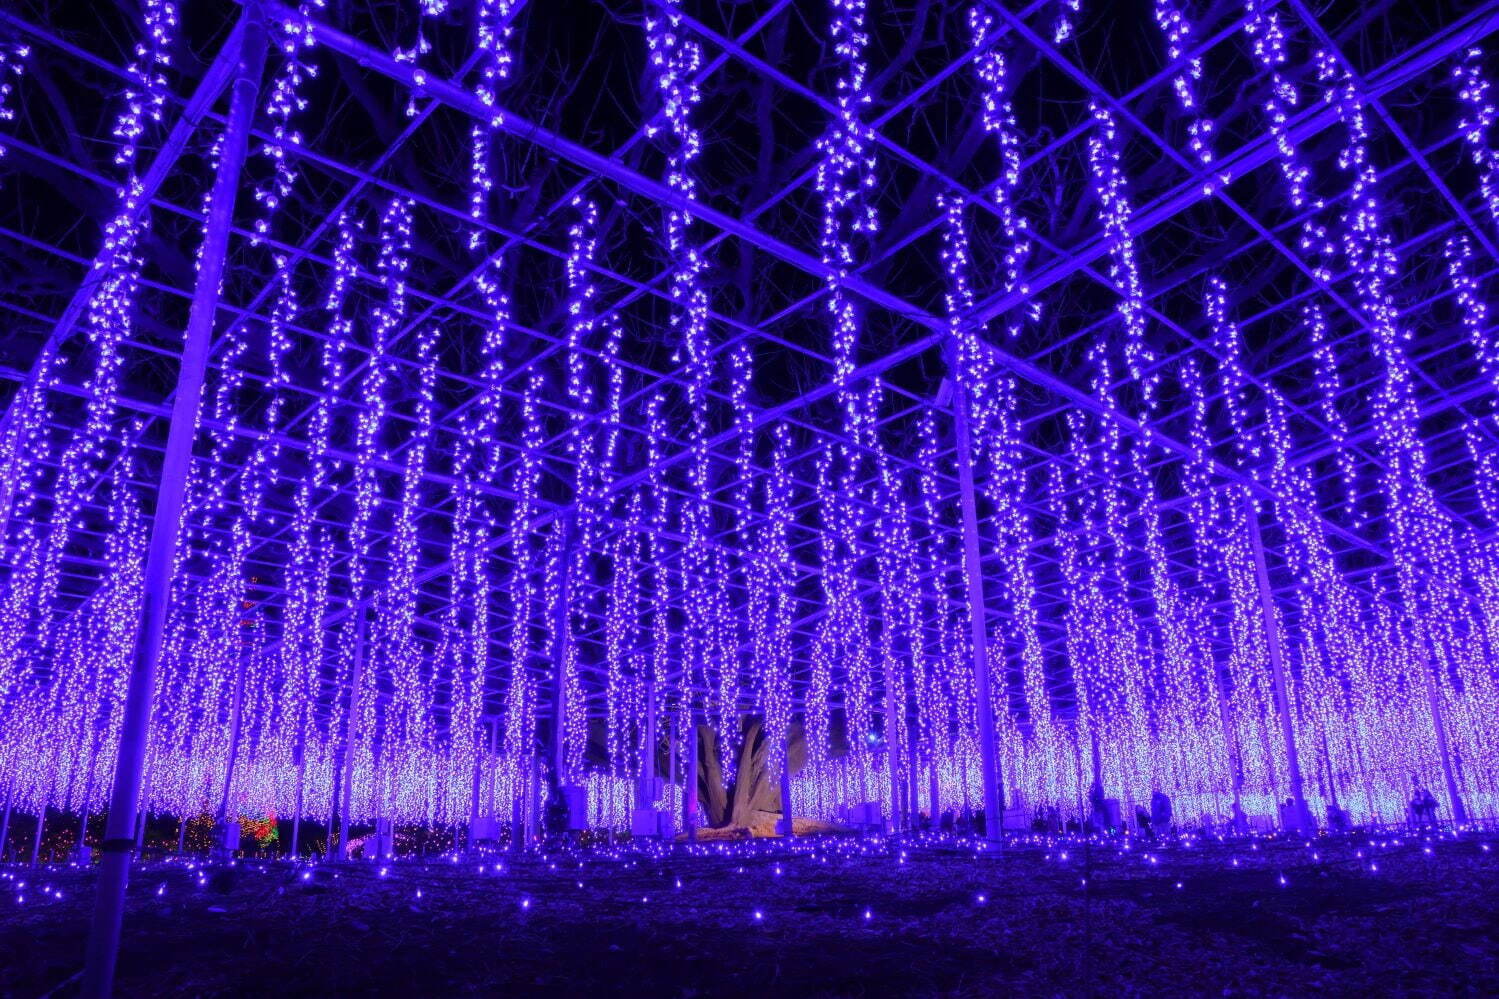 งานประดับไฟสวนดอกไม้แห่งแสง “Flower Garden of Light” - Ashikaga Flower Park จังหวัดโทจิงิ